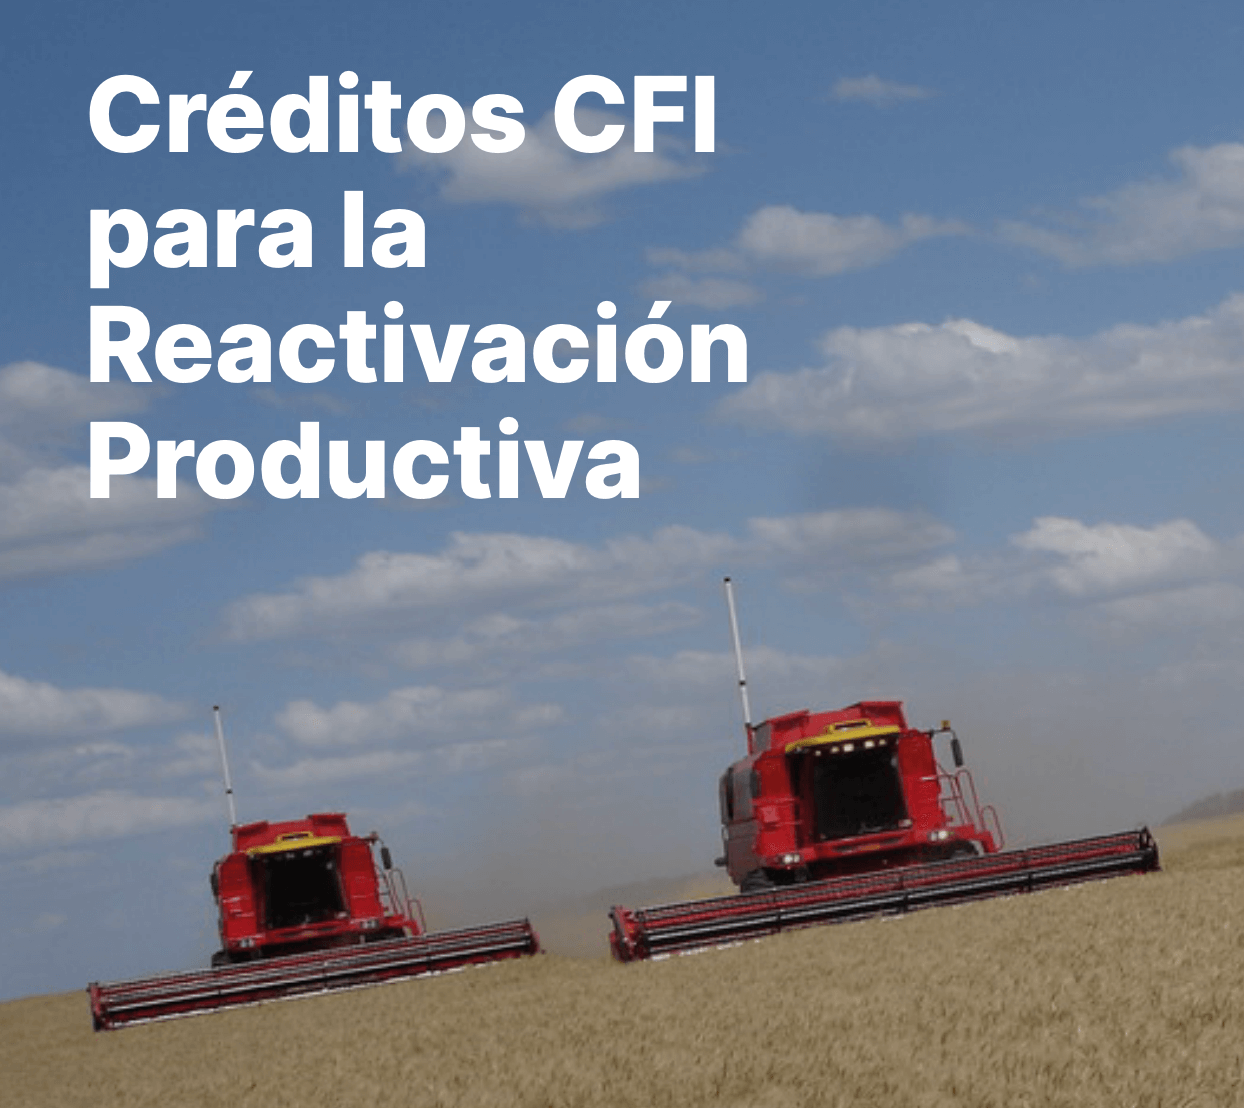 Créditos CFI para la reactivación productiva